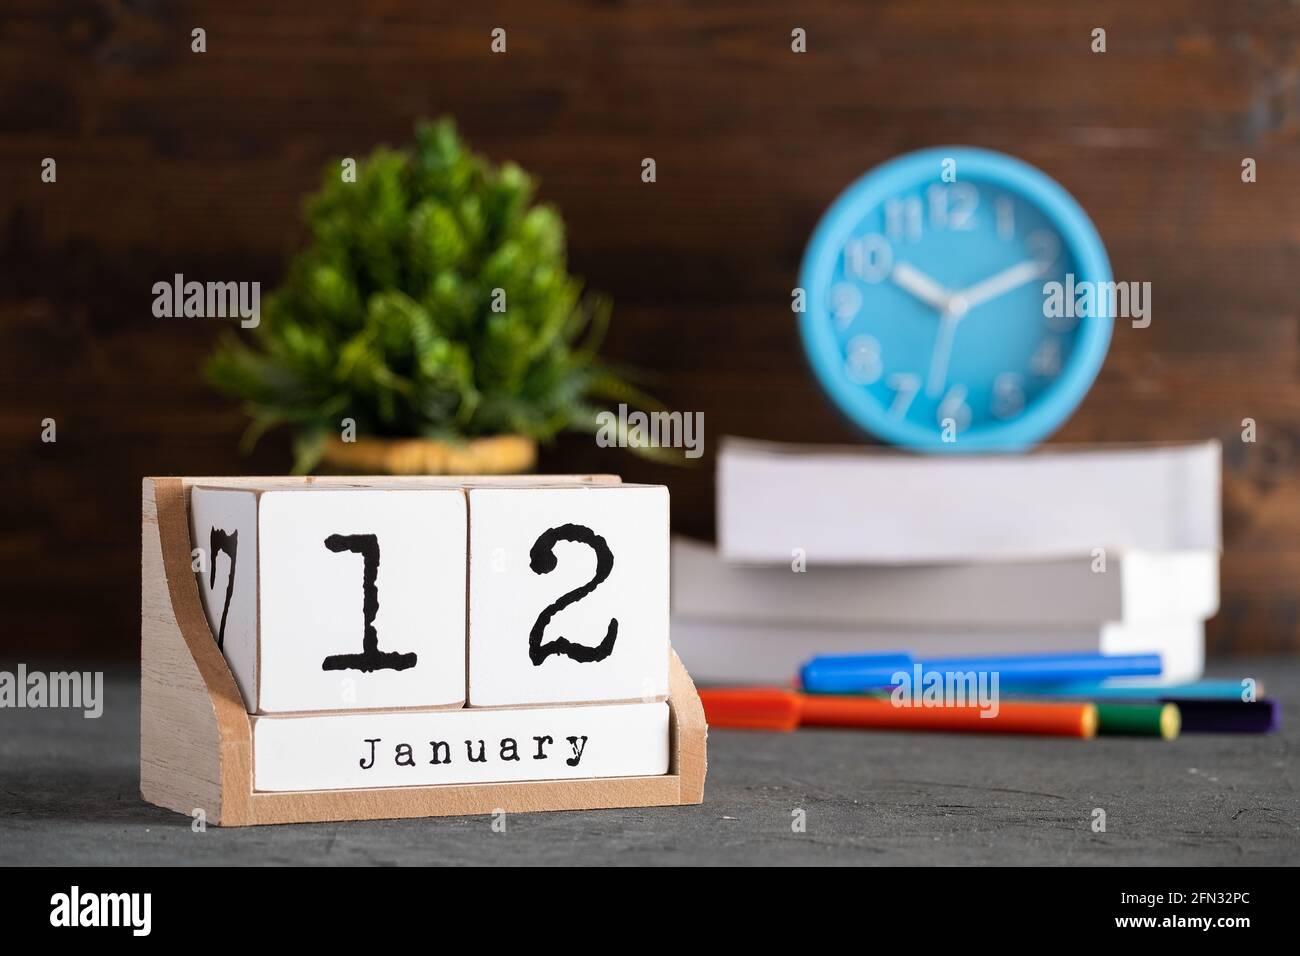 12 janvier. Janvier 12 calendrier cube en bois avec des objets flous sur fond. Banque D'Images